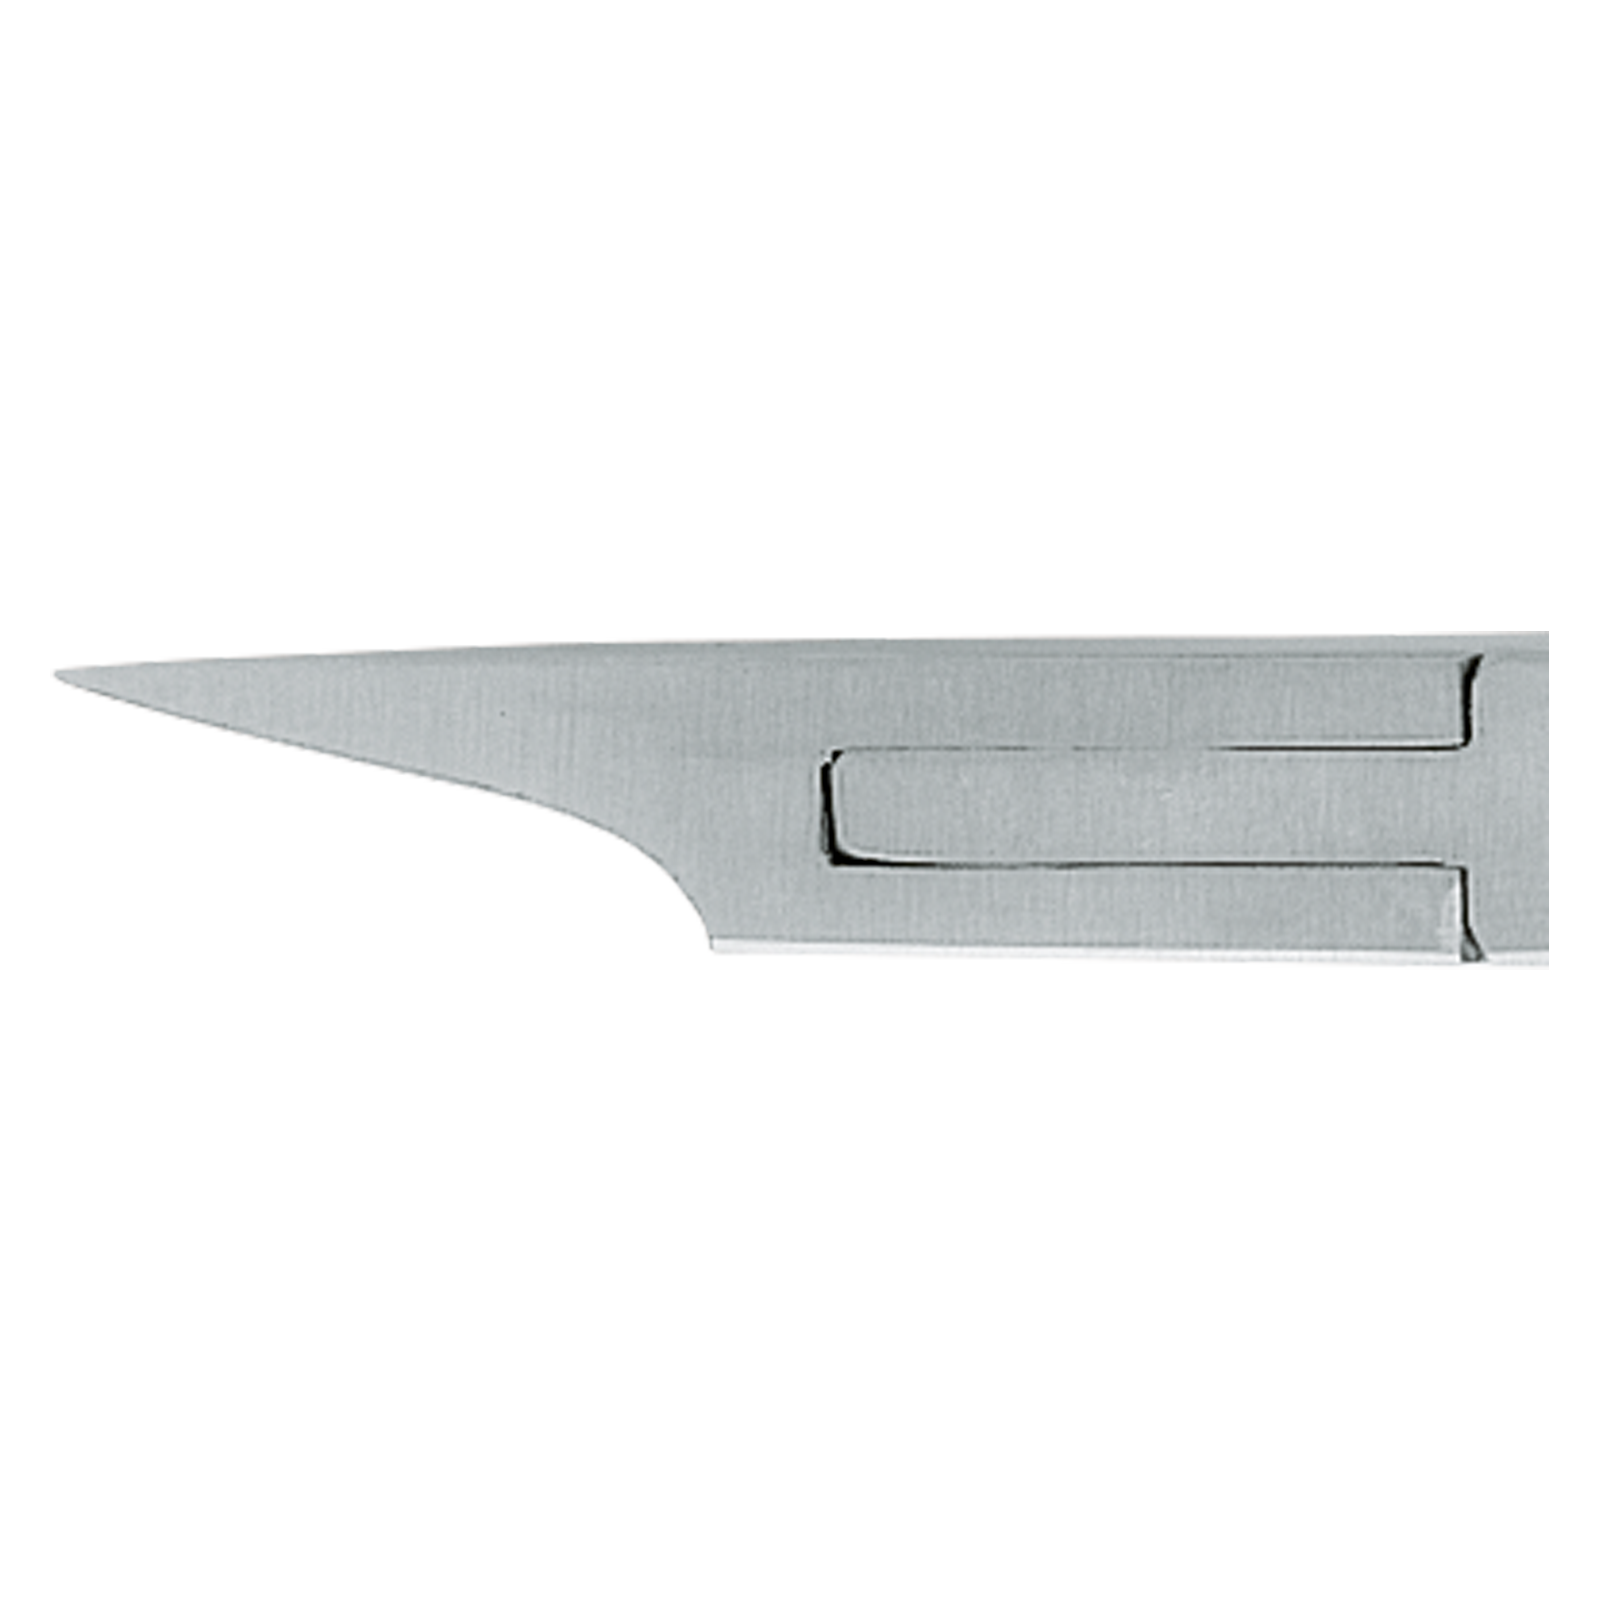 G-490R XG 335 Eckenzange 11,5 cm, Aesculap exklusiv für Gerlach